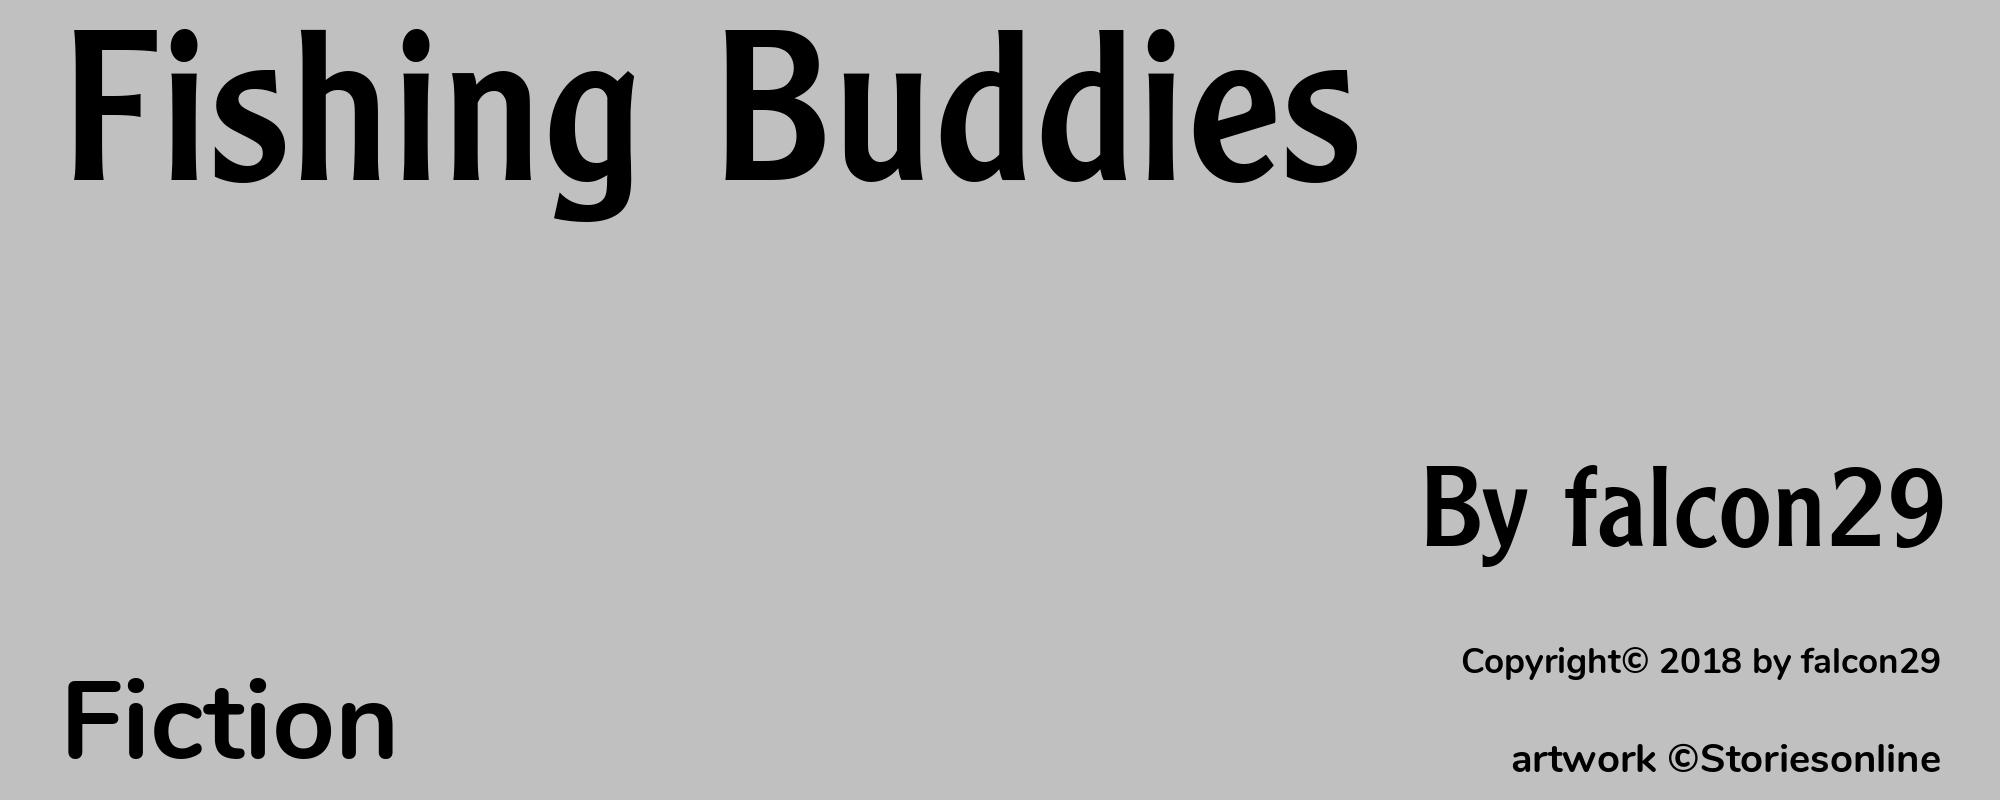 Fishing Buddies - Cover